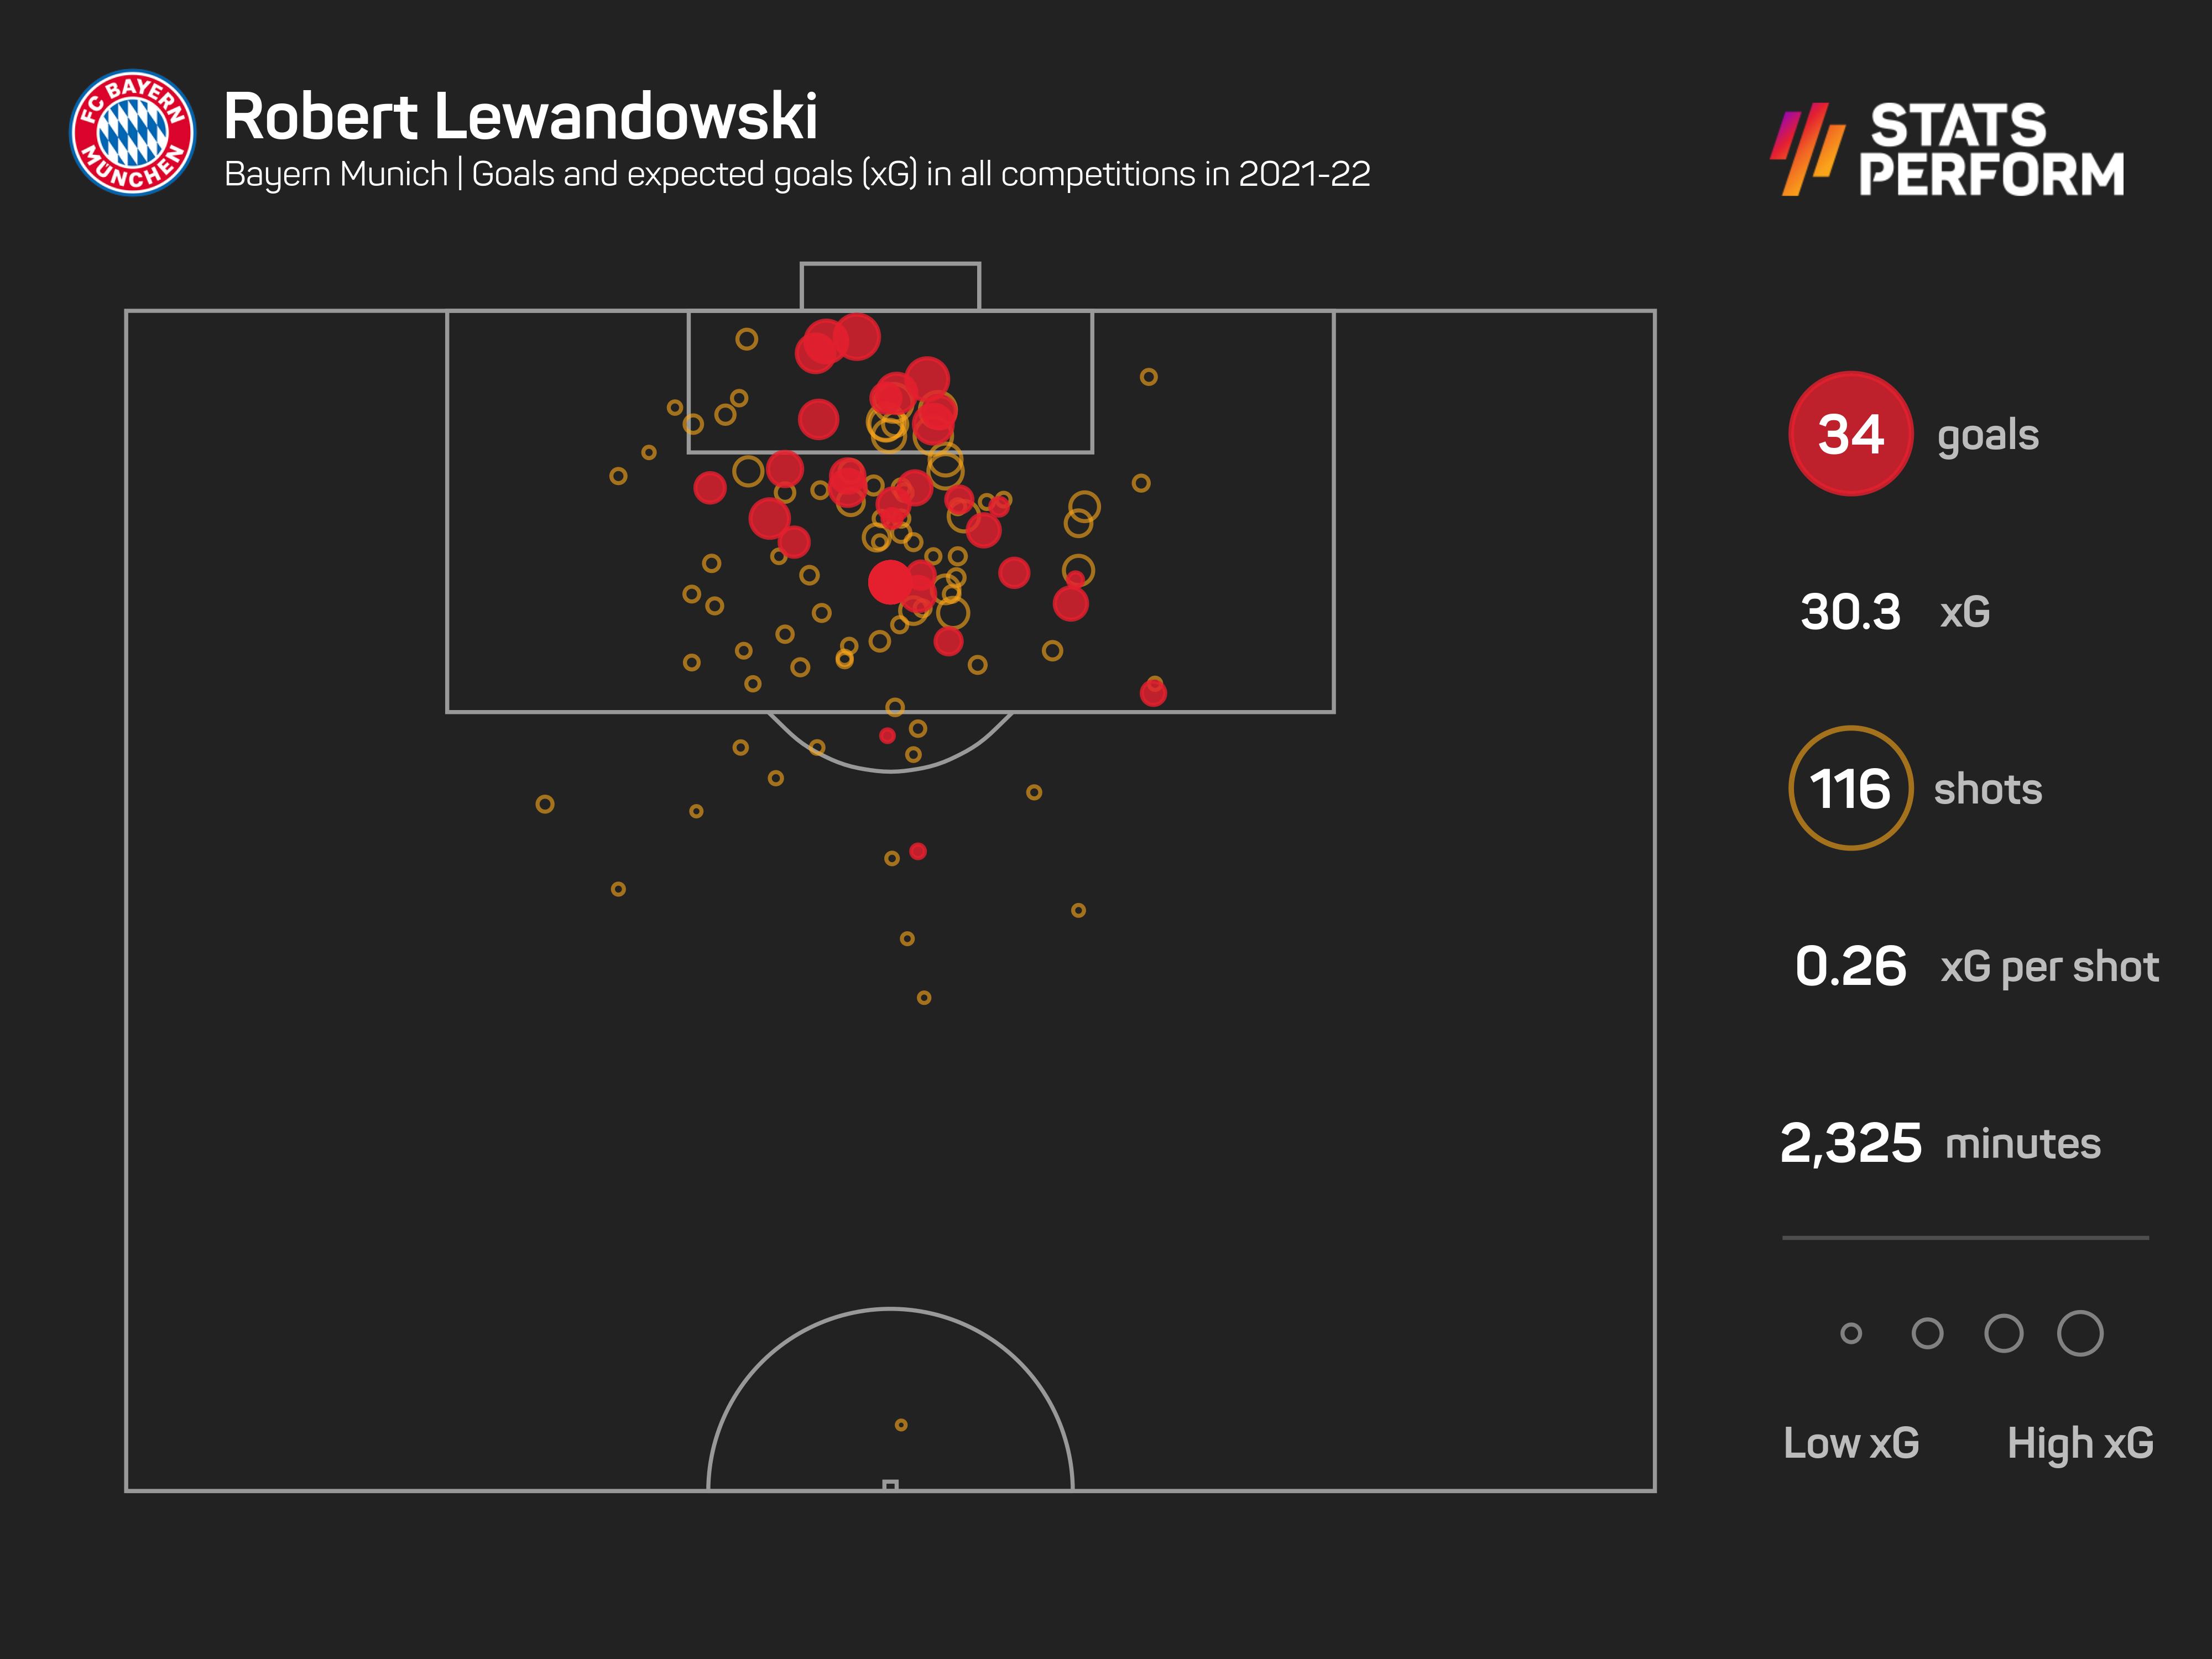 Robert Lewandowski goals and xG